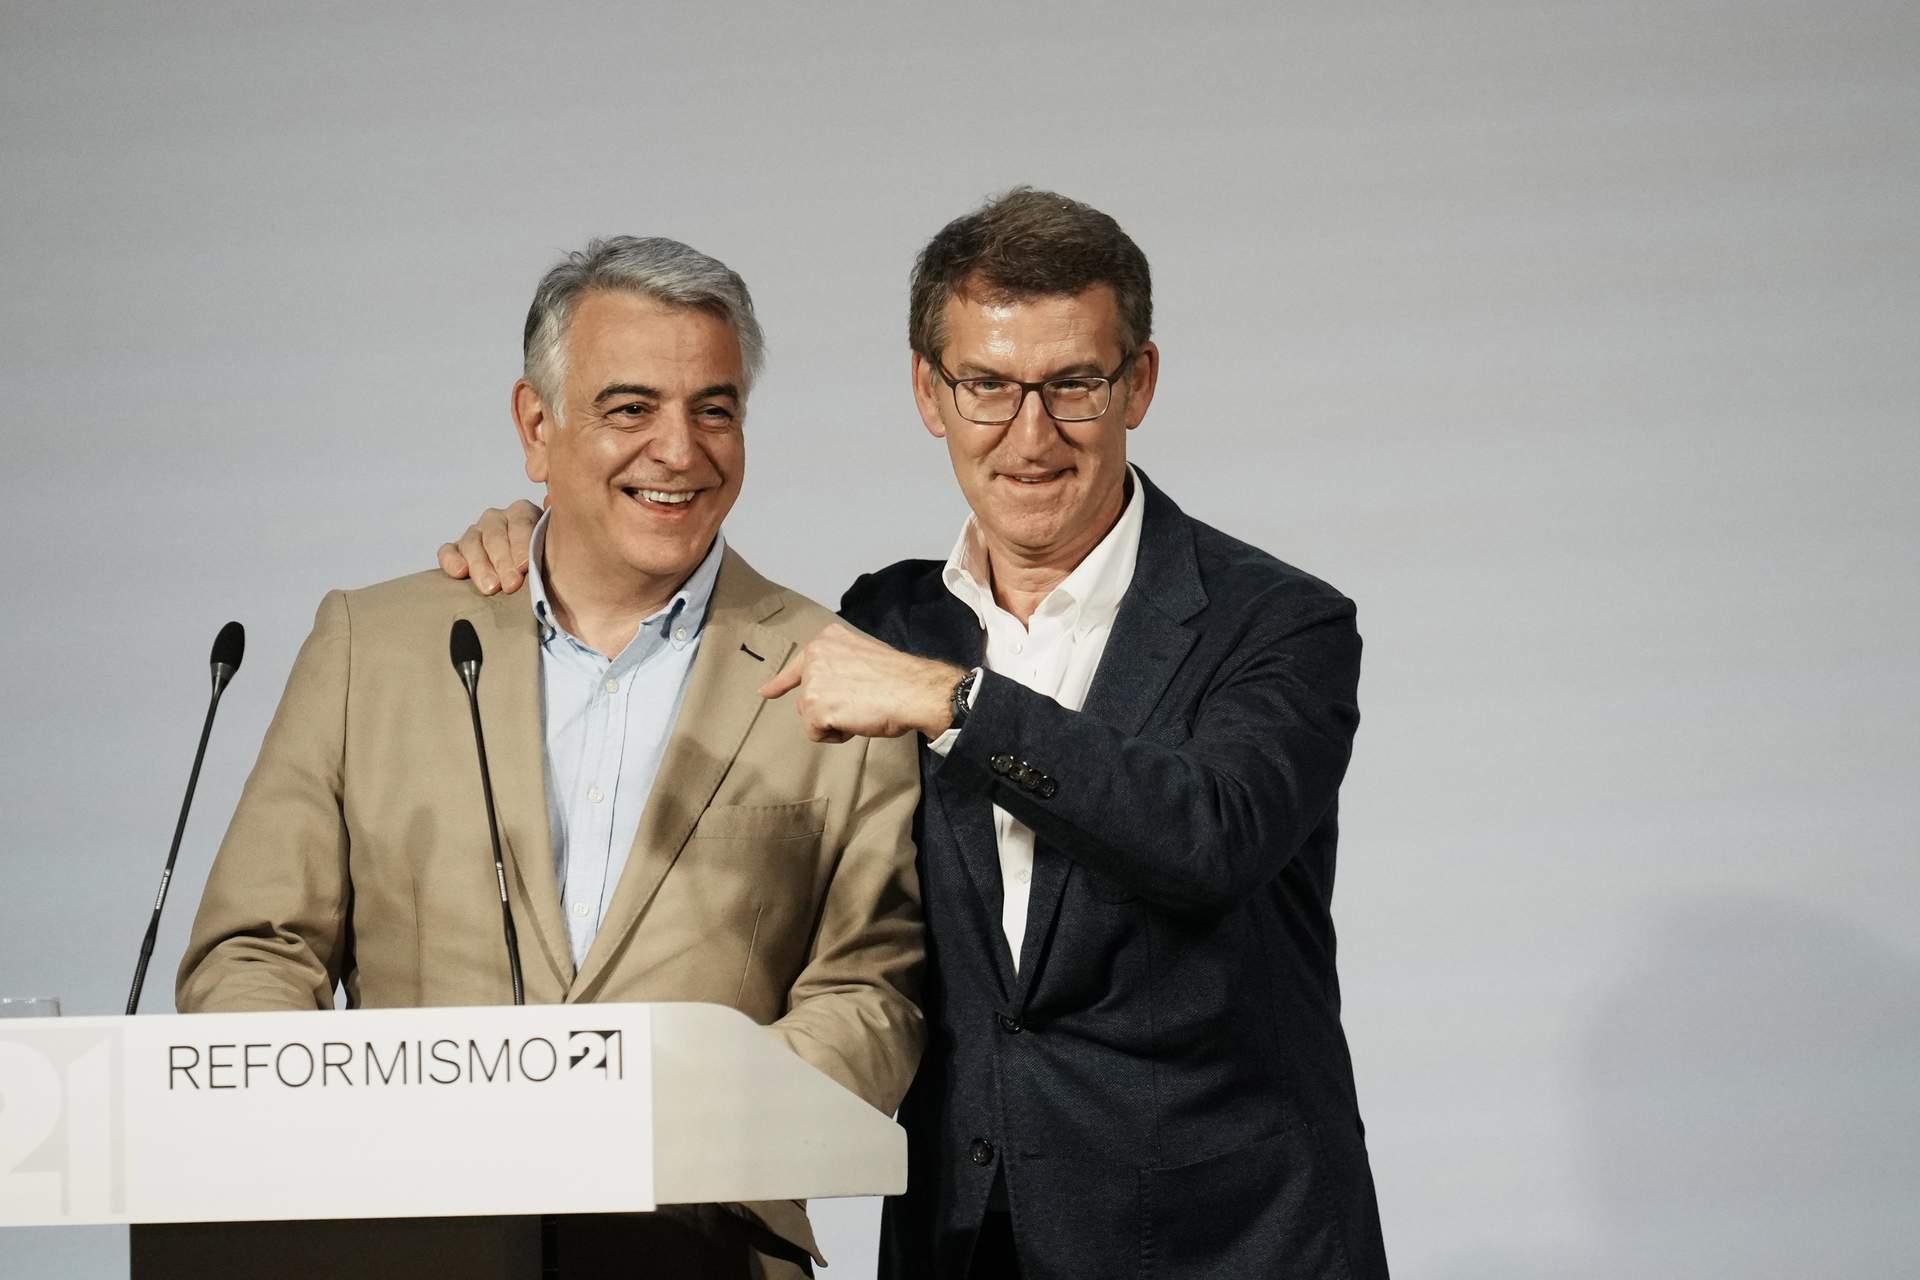 Los presidentes autonómicos del PP respaldarán a De Andrés en la última semana de campaña que concluirá con Feijóo